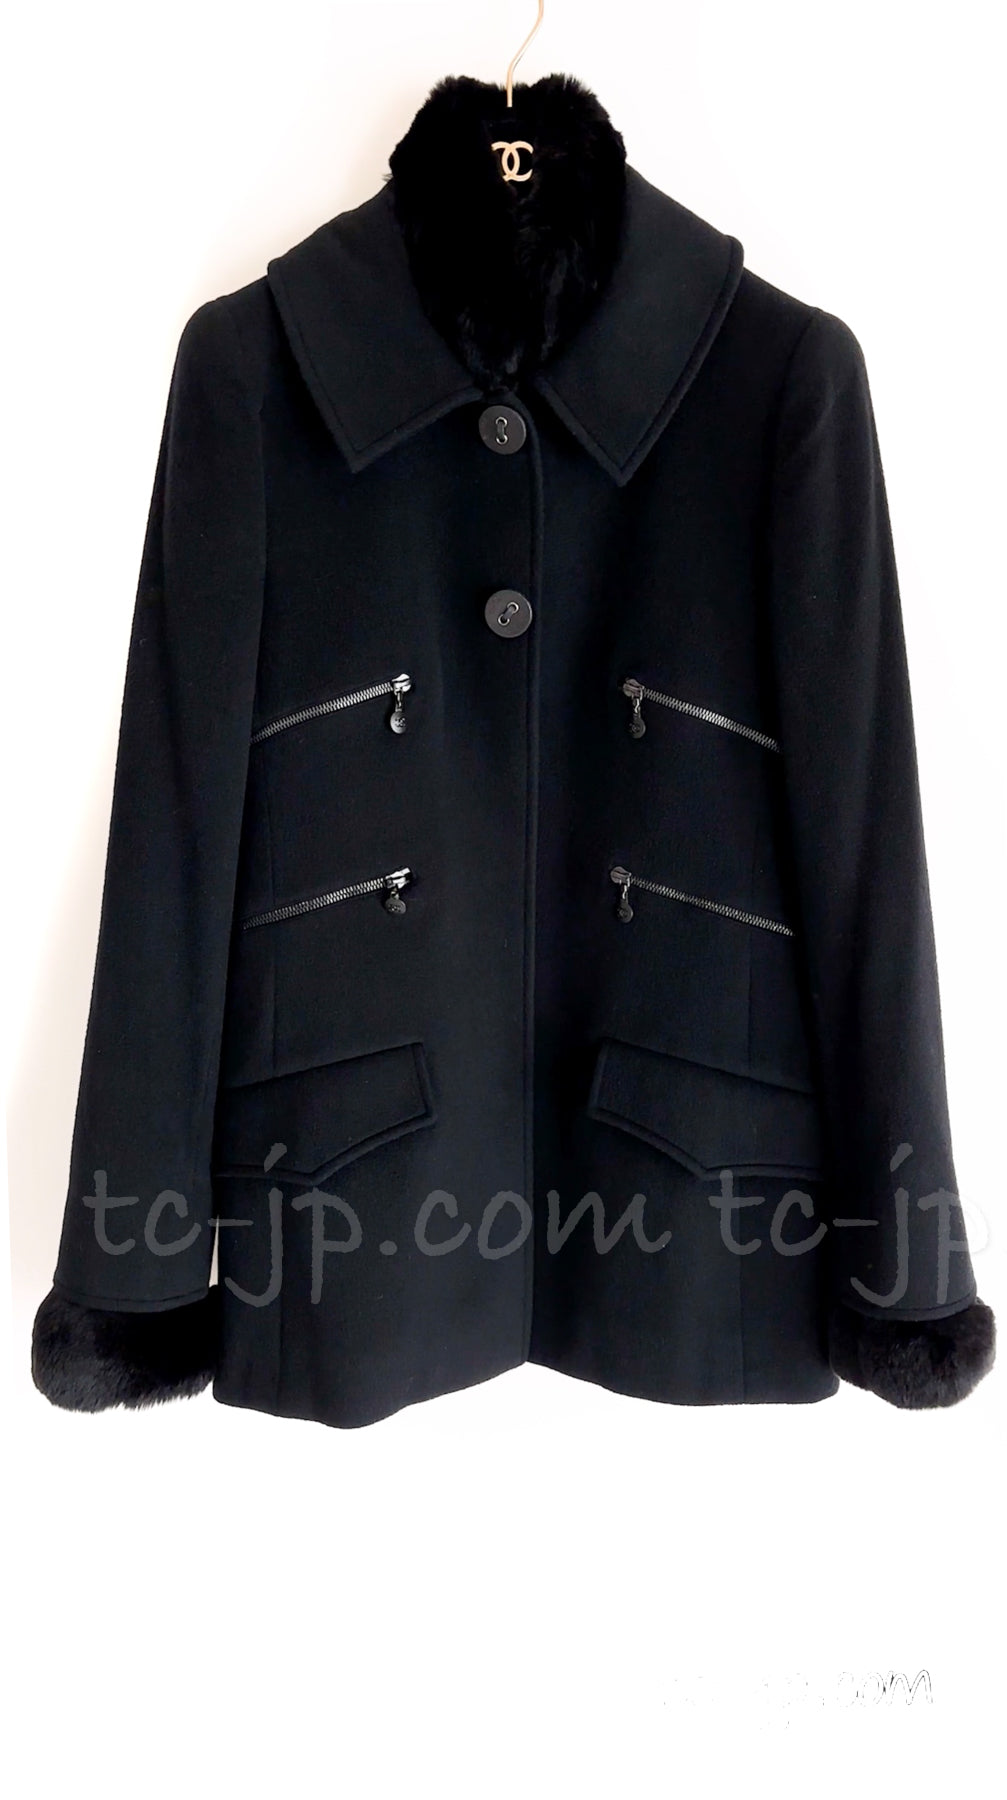 CHANEL 02A Black Charcoal Gray Cashmere Rabbit Fur Jacket Coat 36 38 シャネル ブラック・チャコールグレー・カシミア100・ラパン襟・ジャケット・コート 即発